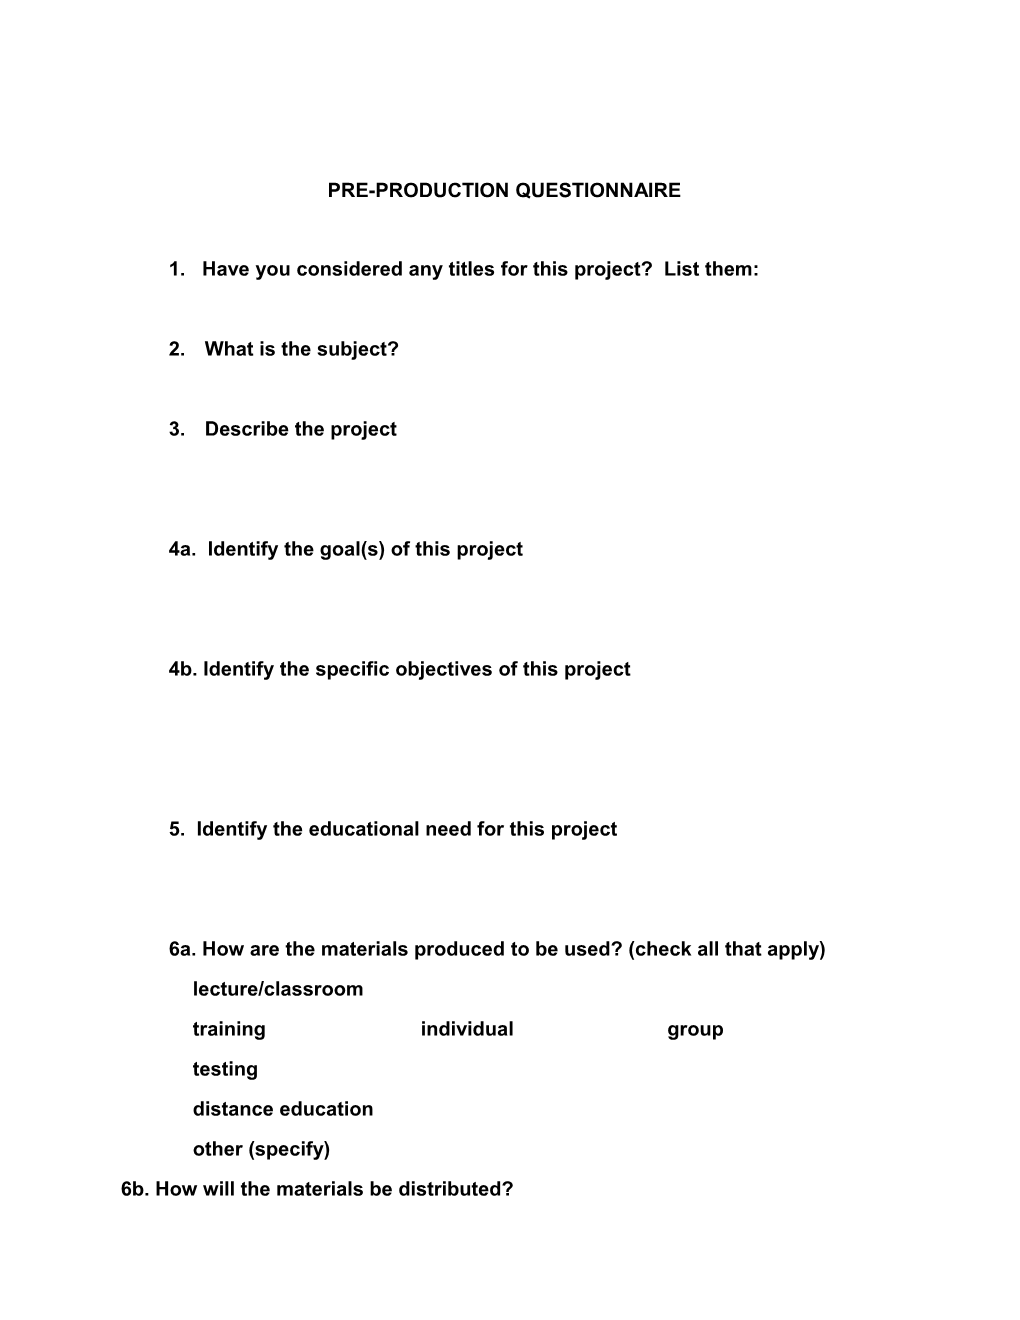 Pre-Production Questionnaire